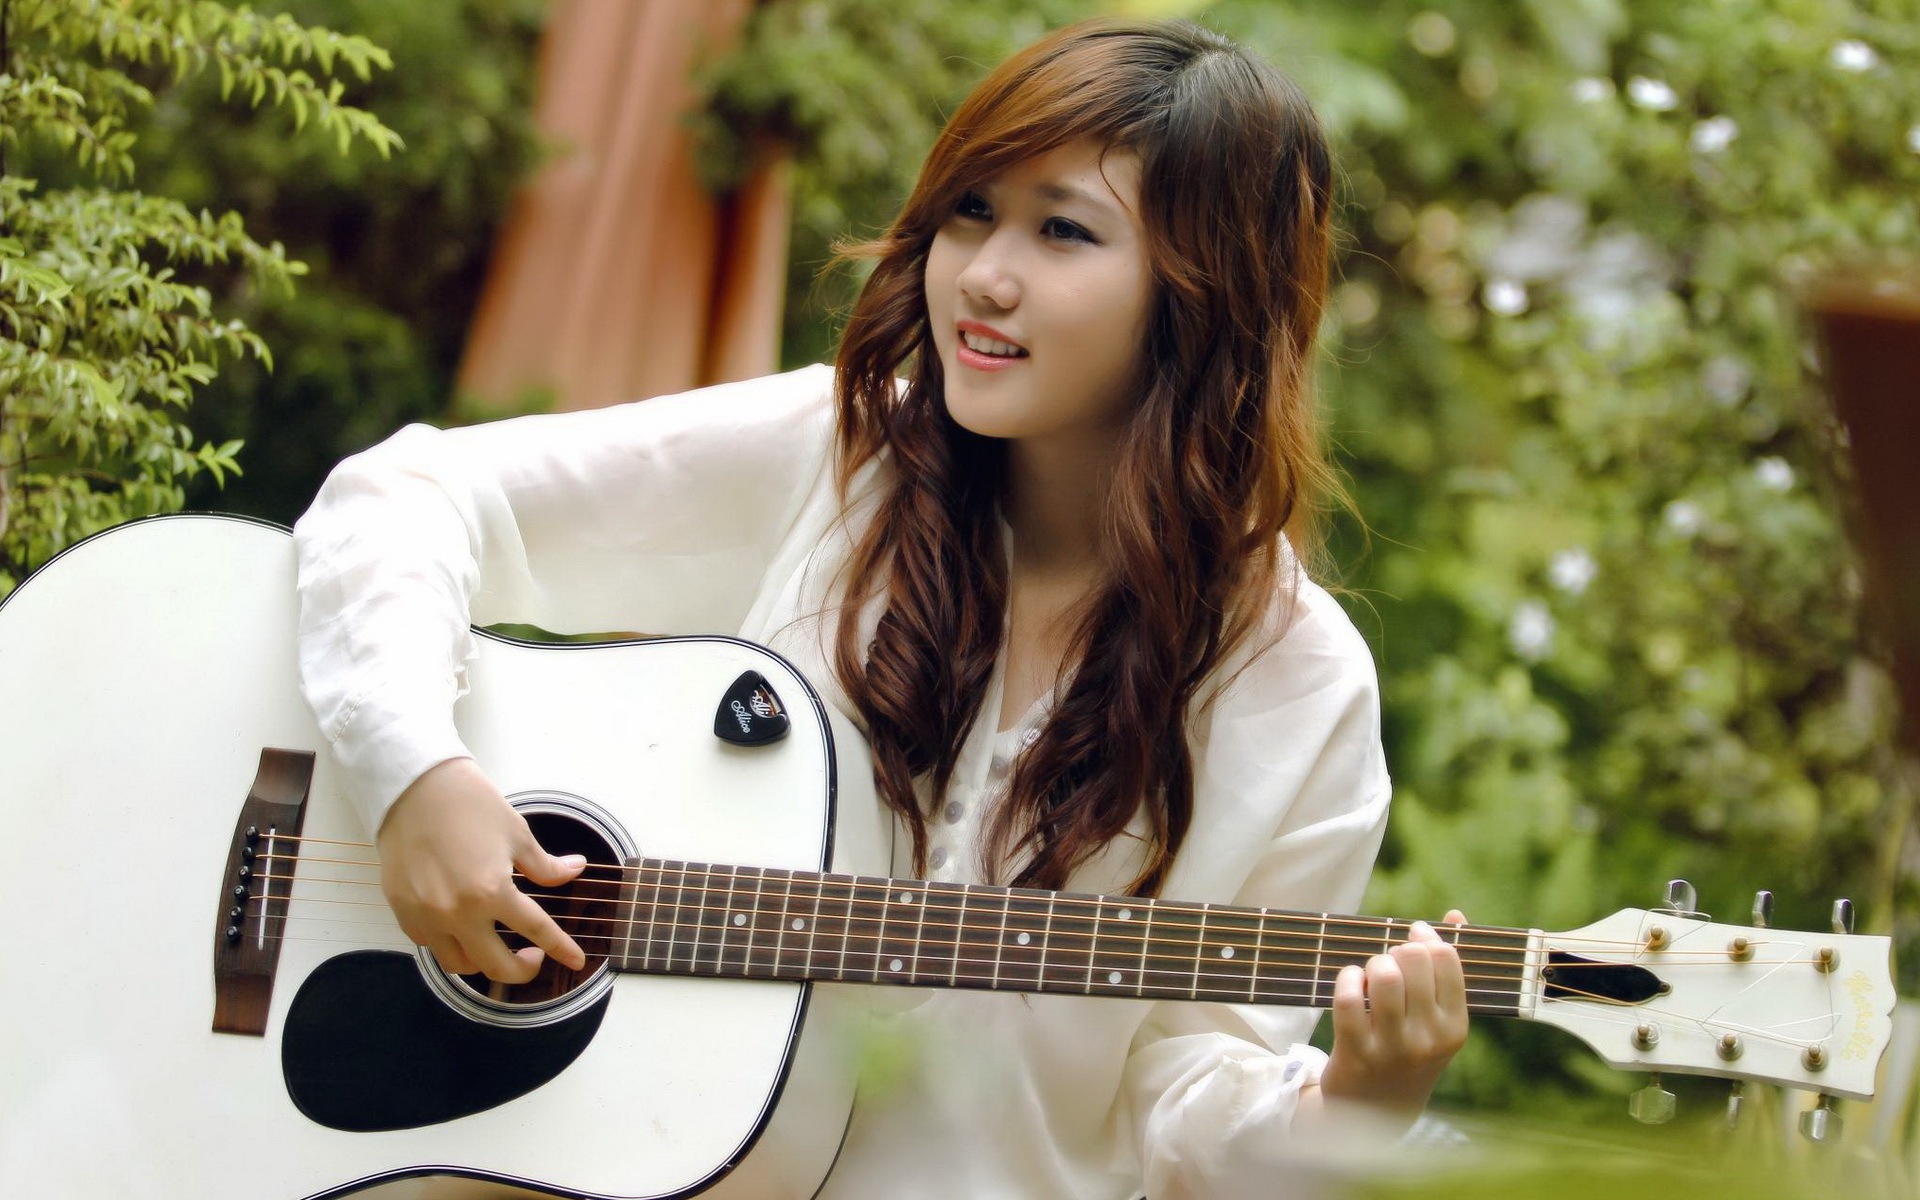 Smile-guitar-girl-music-asian_1920x1200.jpg